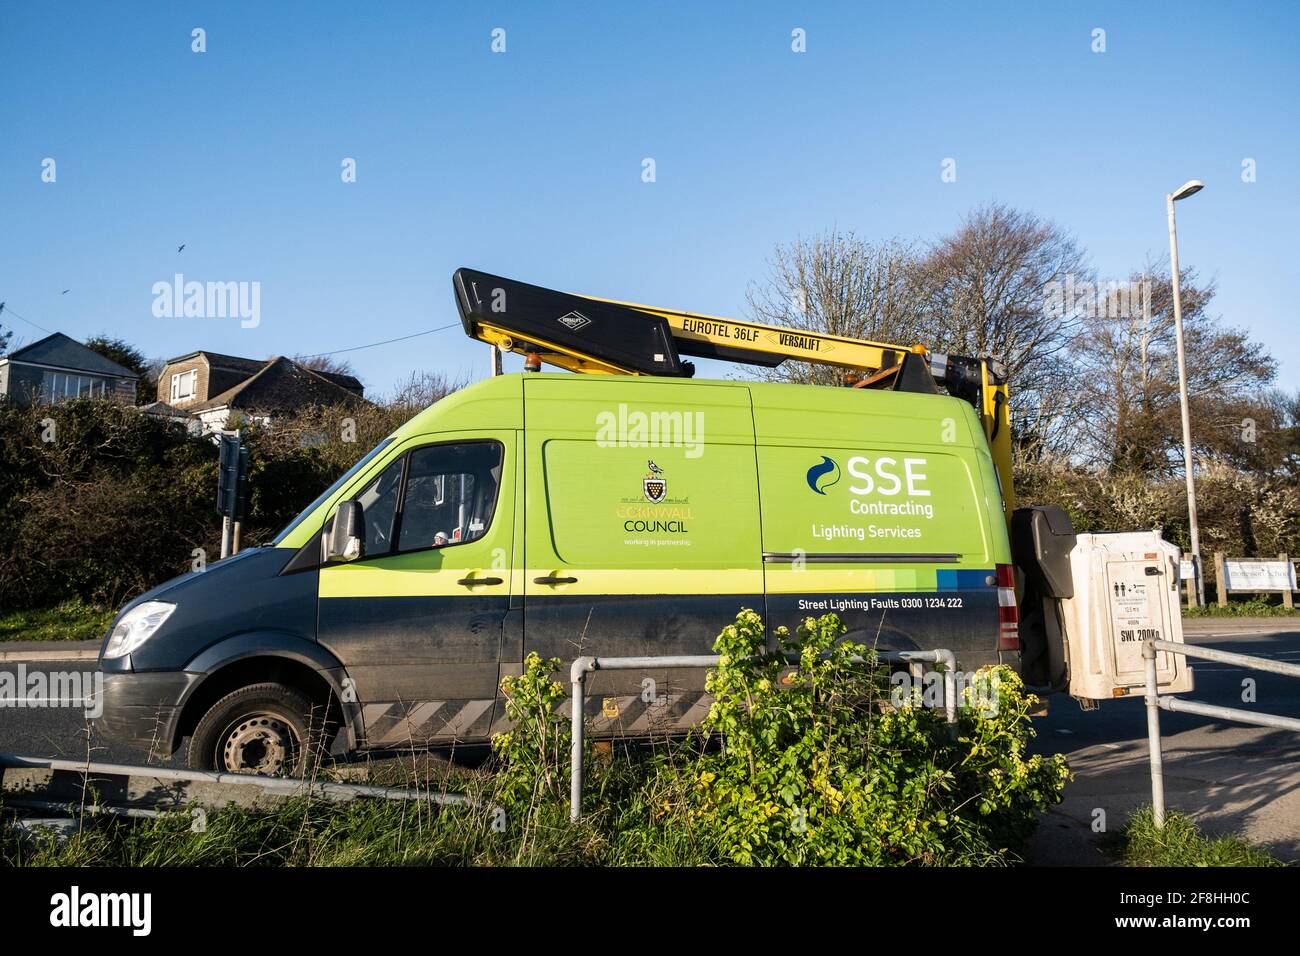 Ein Fahrzeug für die Erbringung von Beleuchtungsdienstleistungen von SSE, das mit einem Eurotel ausgestattet ist 36LF Versalift arbeitet für Cornwall Council auf der Seite geparkt Einer Straße in Newquay Stockfoto